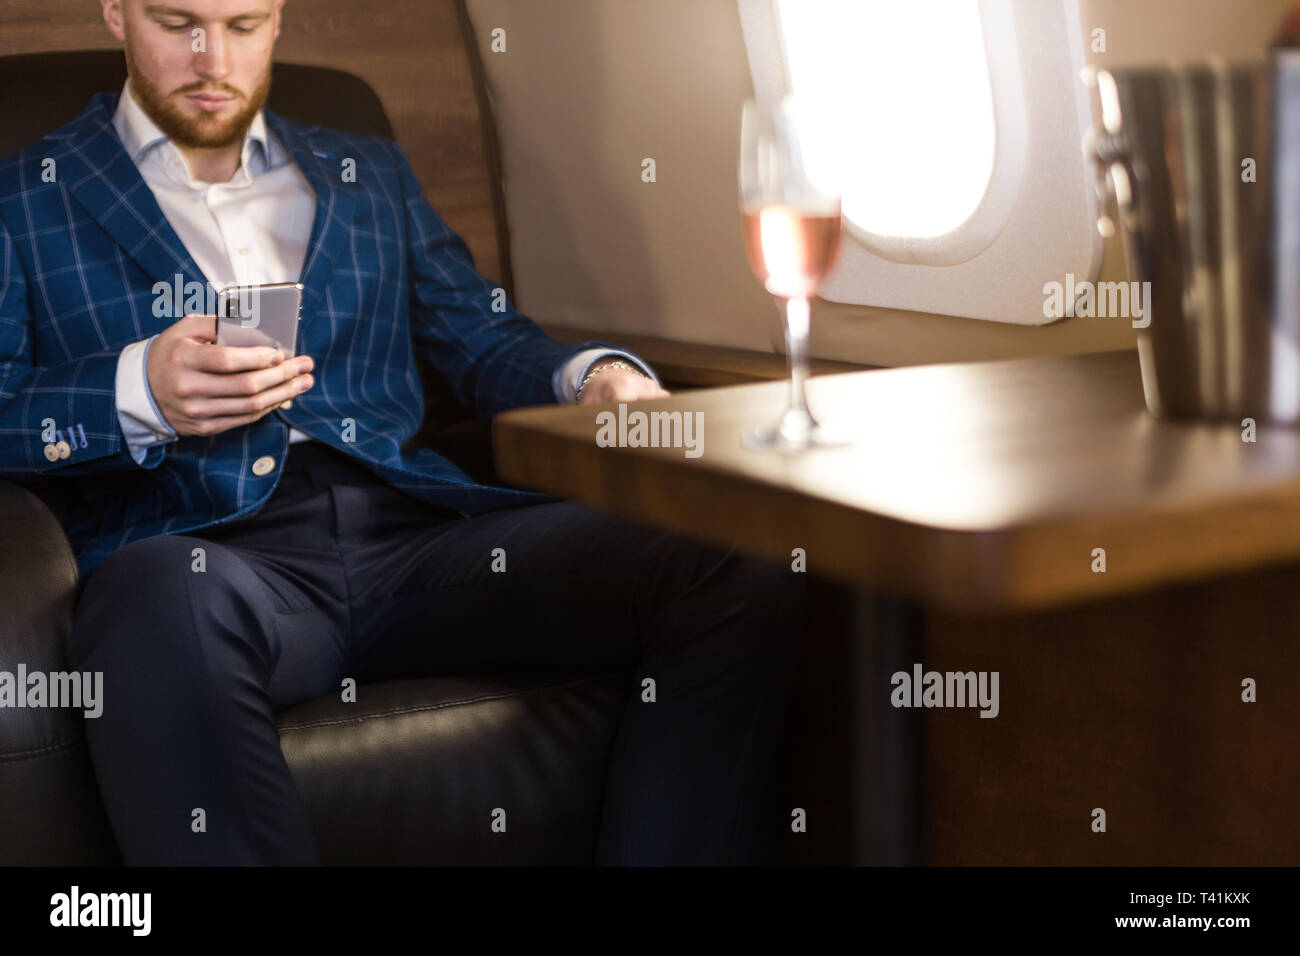 Un giovane imprenditore di successo in un costoso abito si siede sulla poltrona di un jet privato con un bicchiere di champagne in mano e guarda fuori dalla finestra. Foto Stock